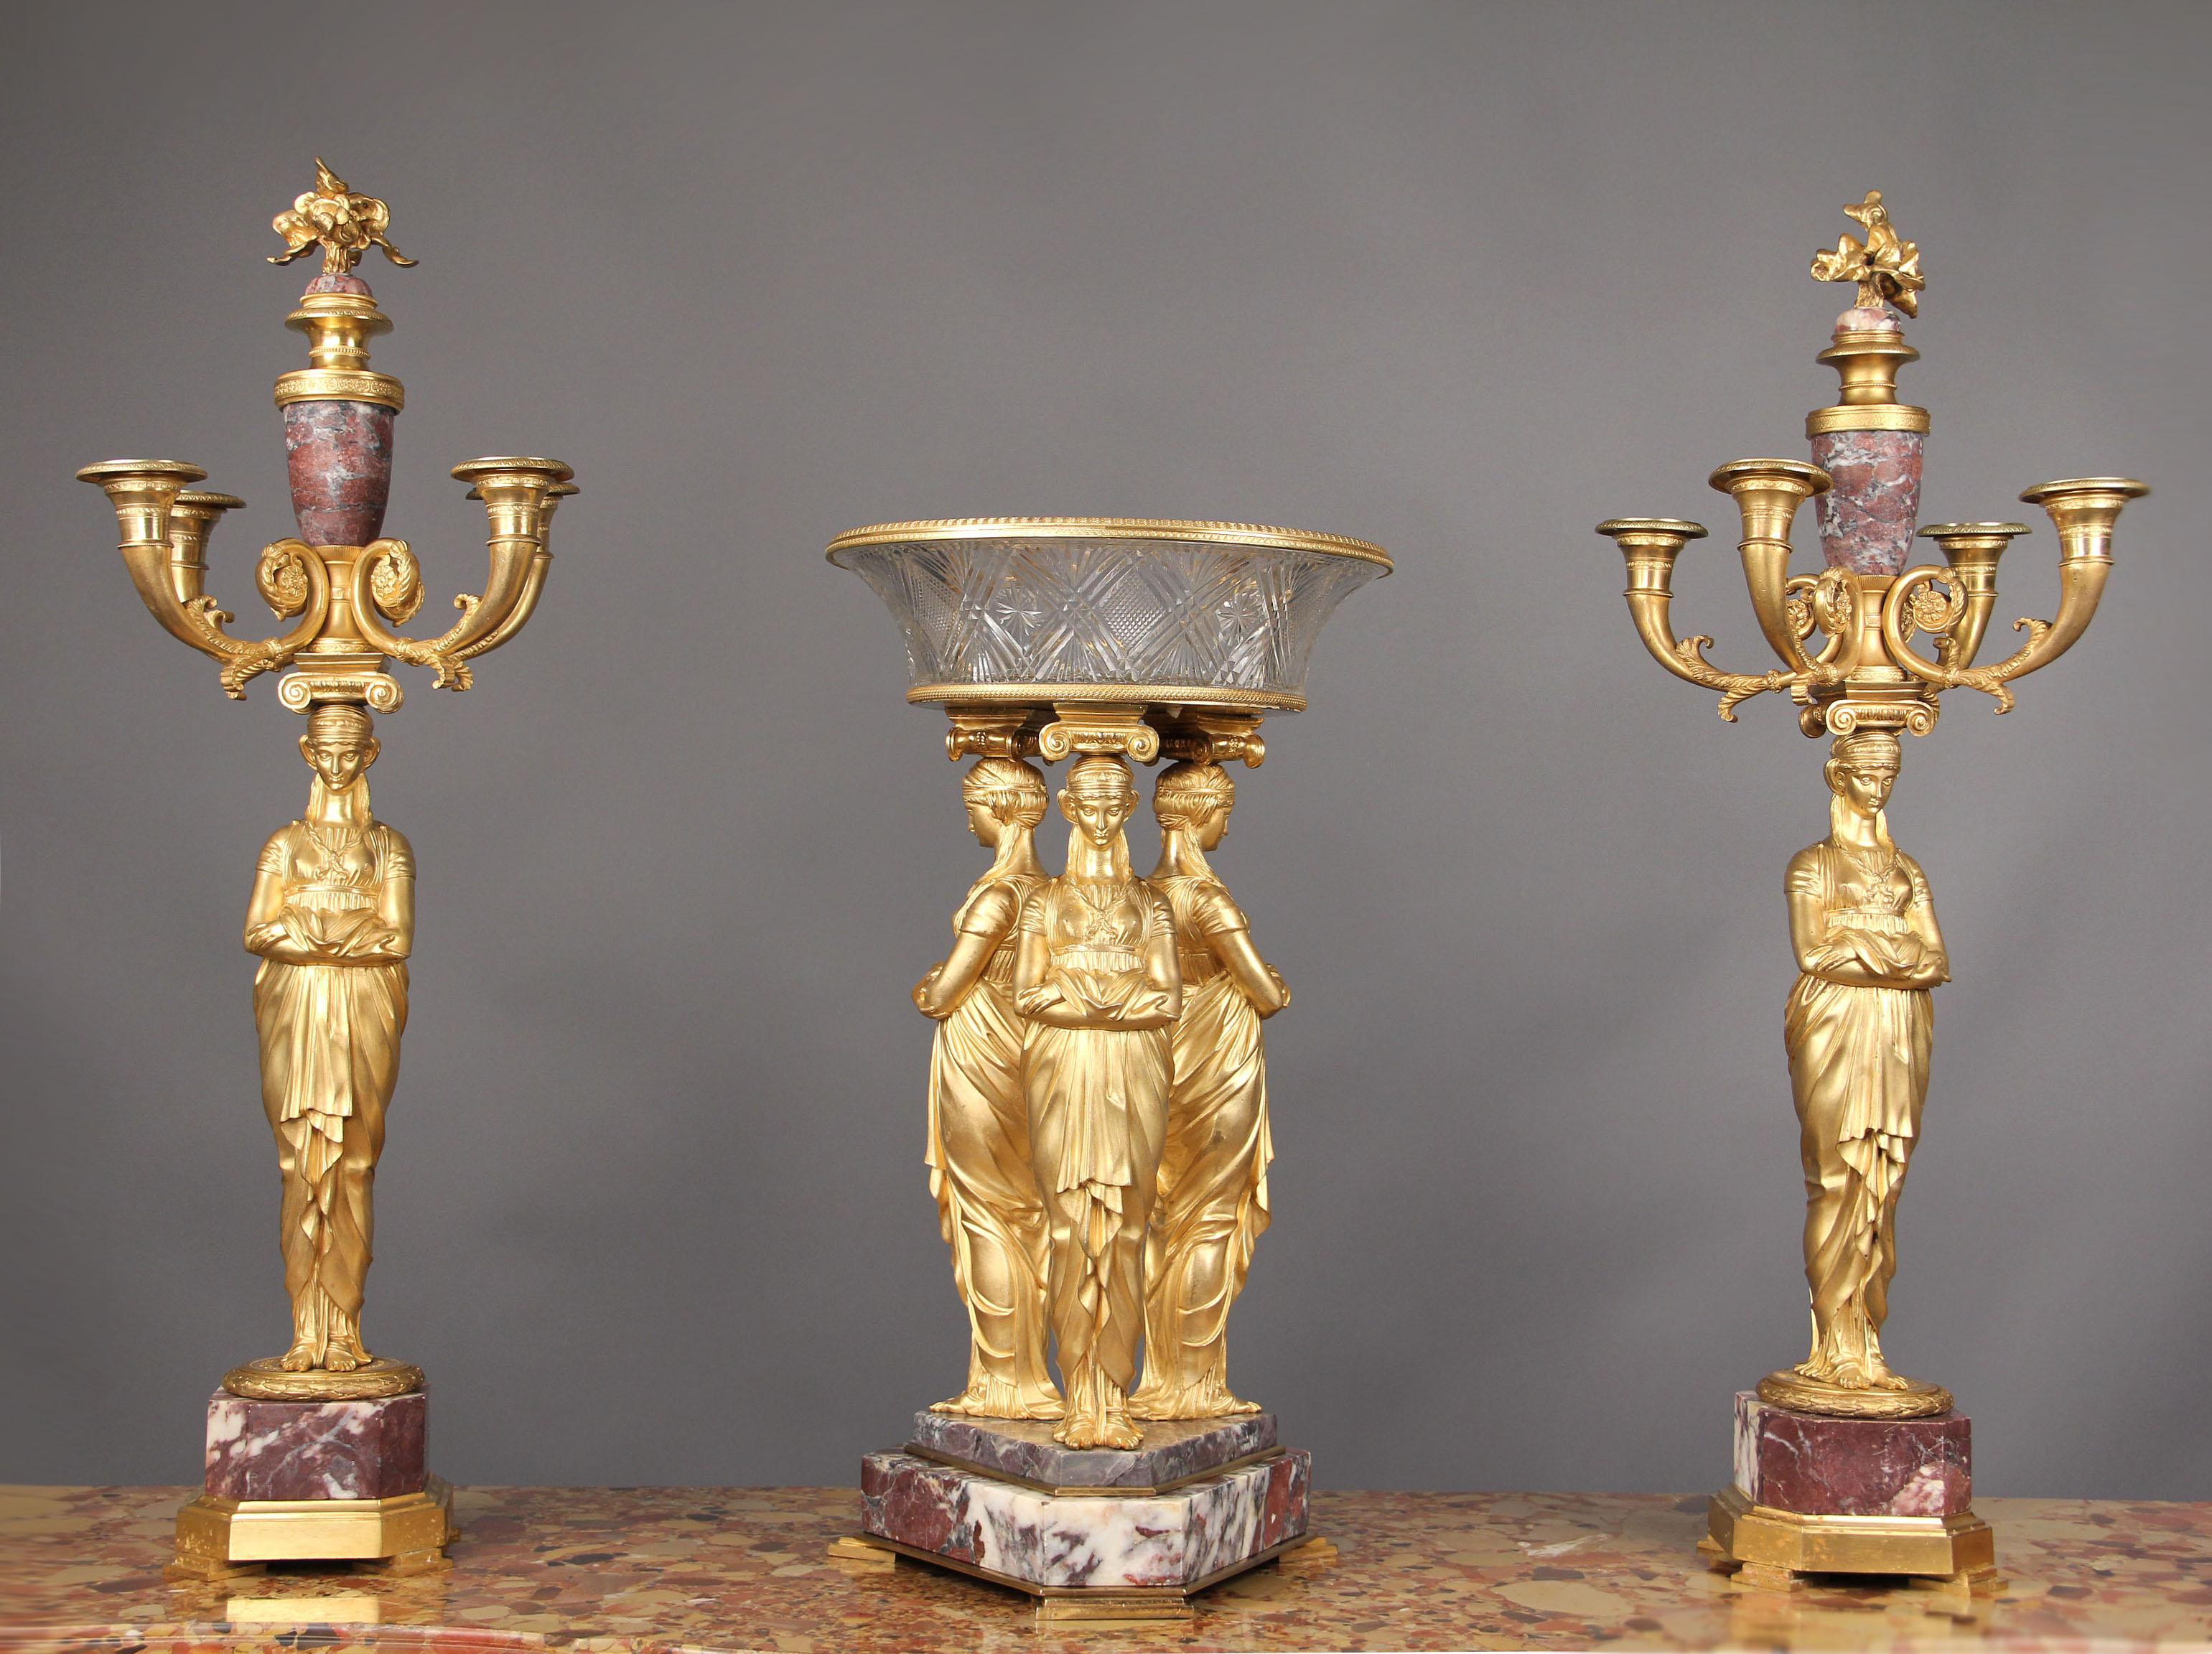 Eine fantastische dreiteilige Garnitur im Empire-Stil des späten 19. Jahrhunderts aus vergoldeter Bronze und Fleur de Pecher-Marmor.

Die Tazza ist mit drei klassischen Musen modelliert, die ionische Kapitelle und eine flammend geschliffene